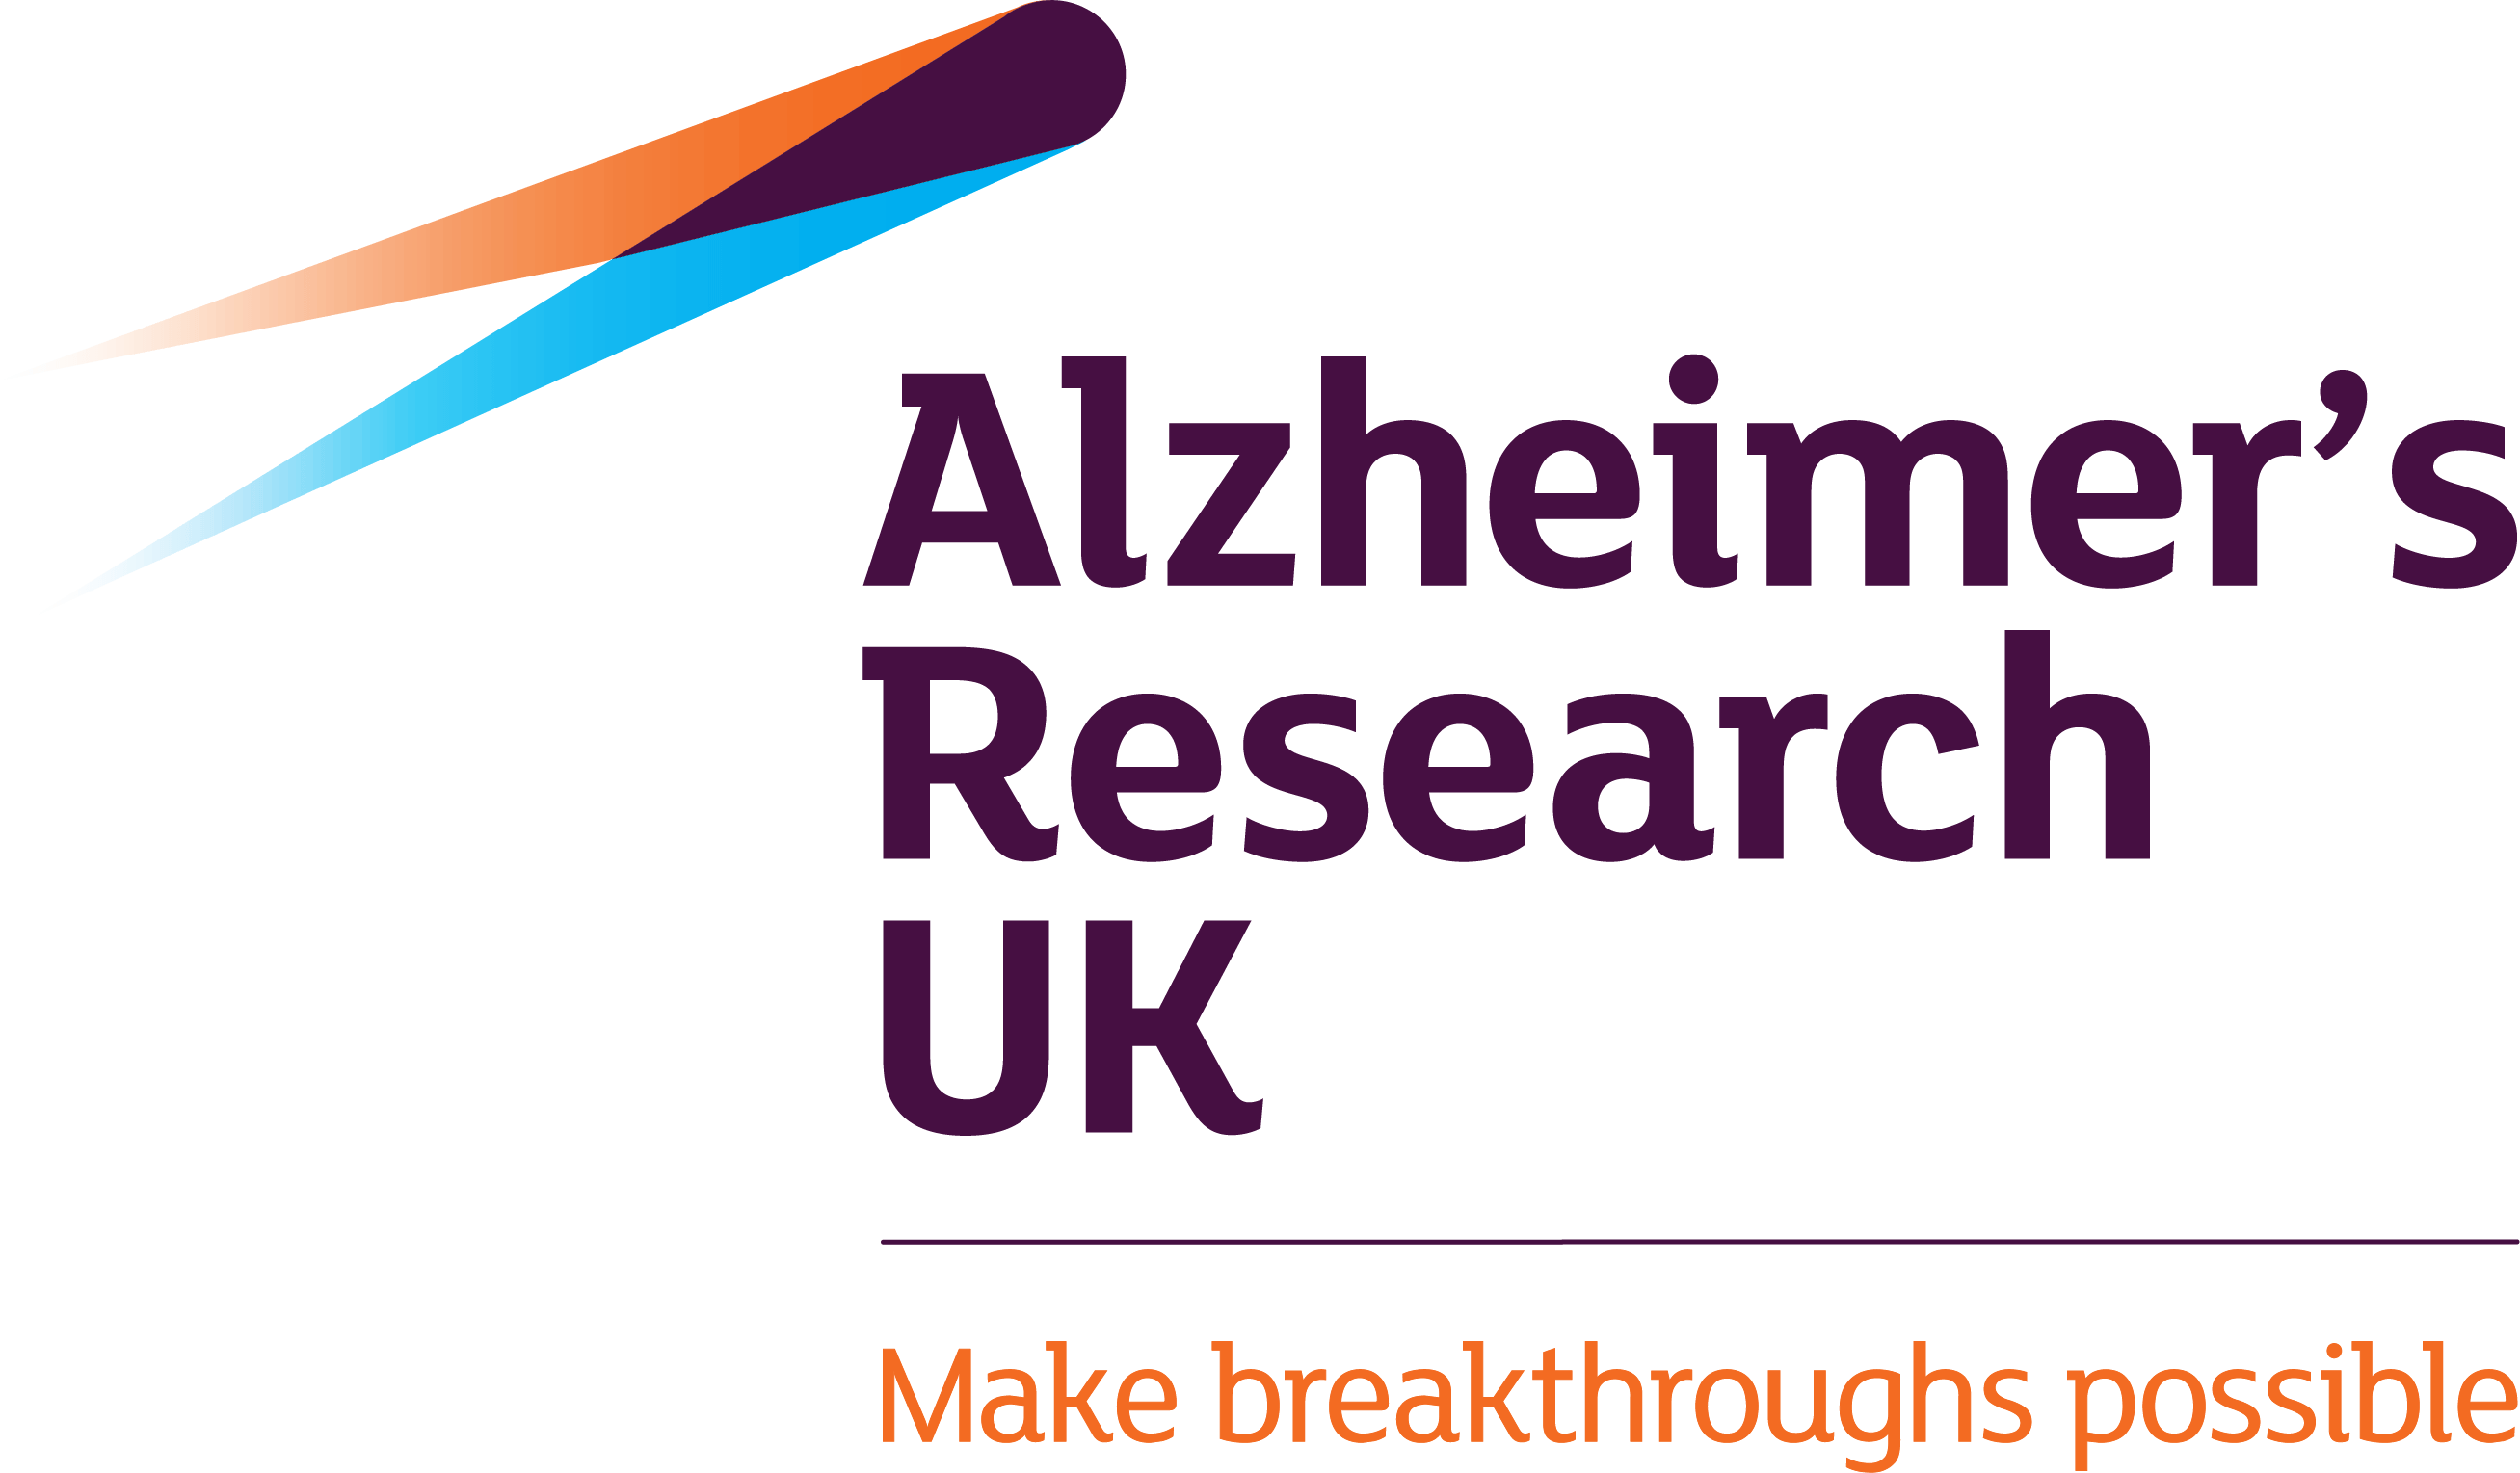 Alzheimer's Research UK logo